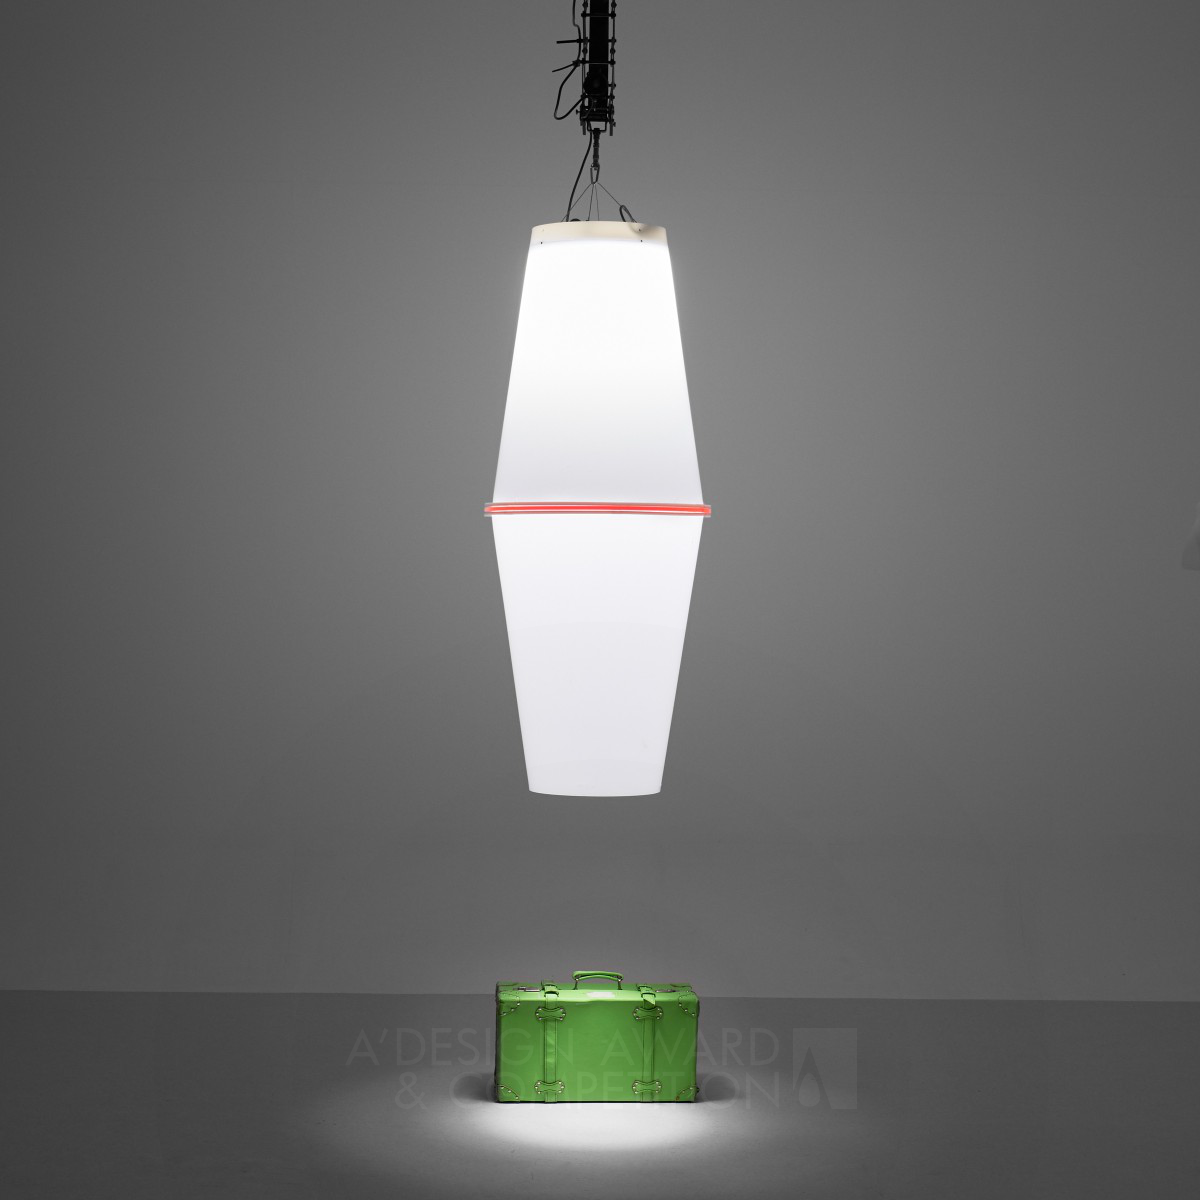 Divide Light fixture by Ari Korolainen